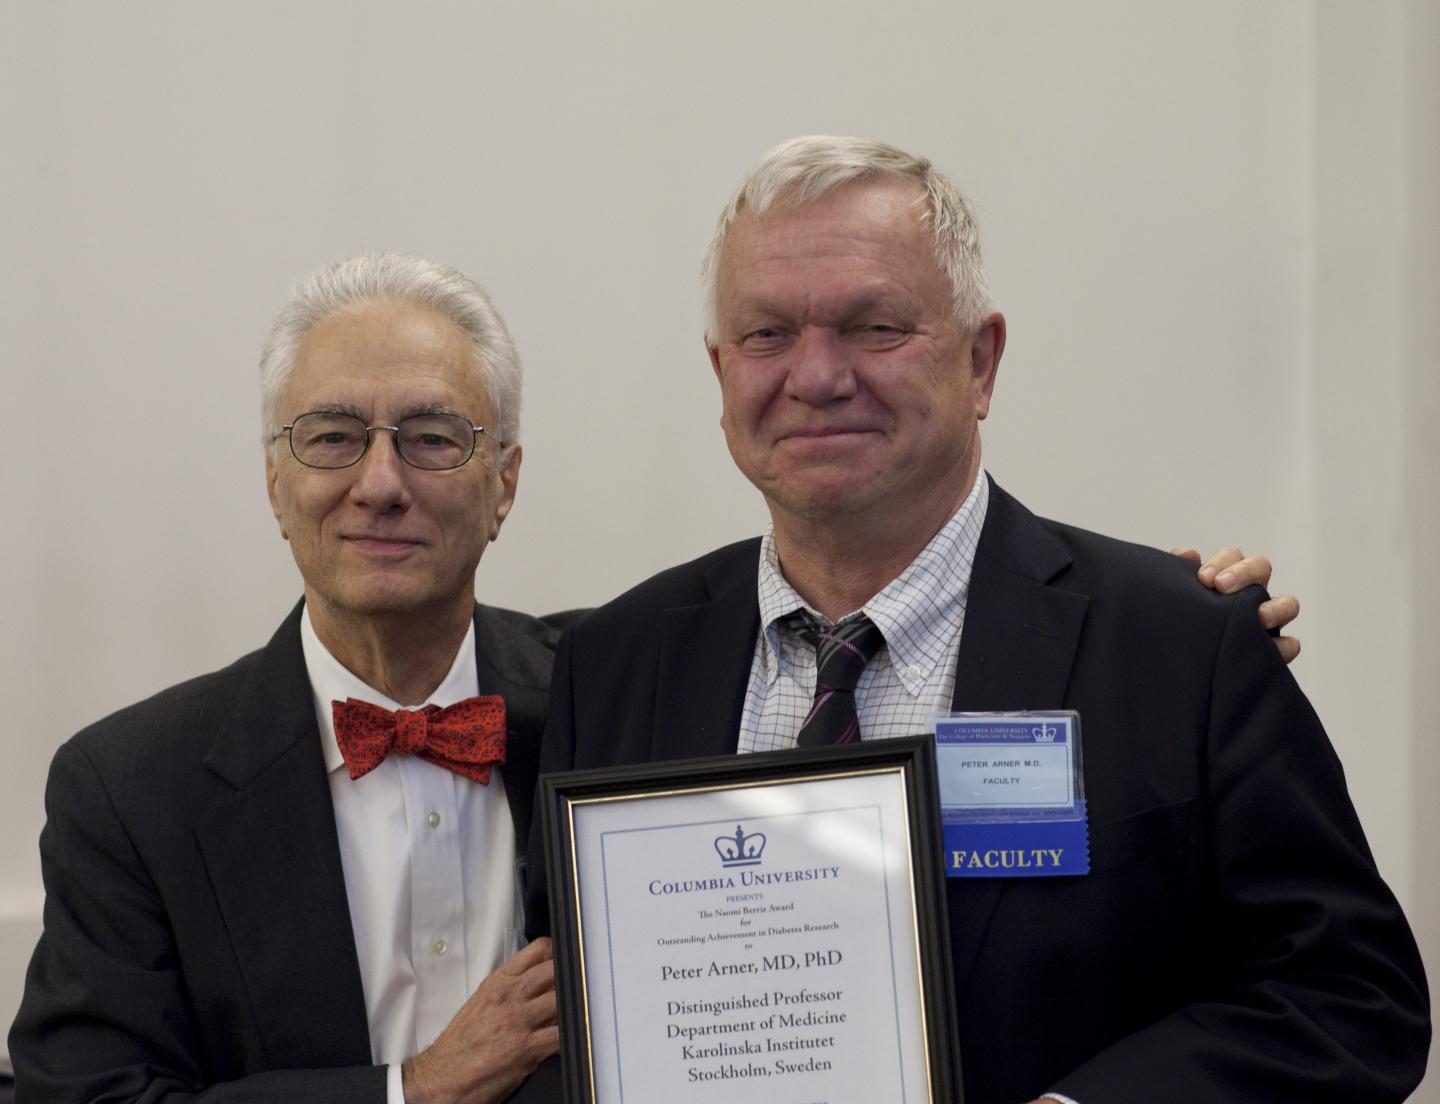 Dr. Rudolph L. Leibel and Dr. Peter Arner